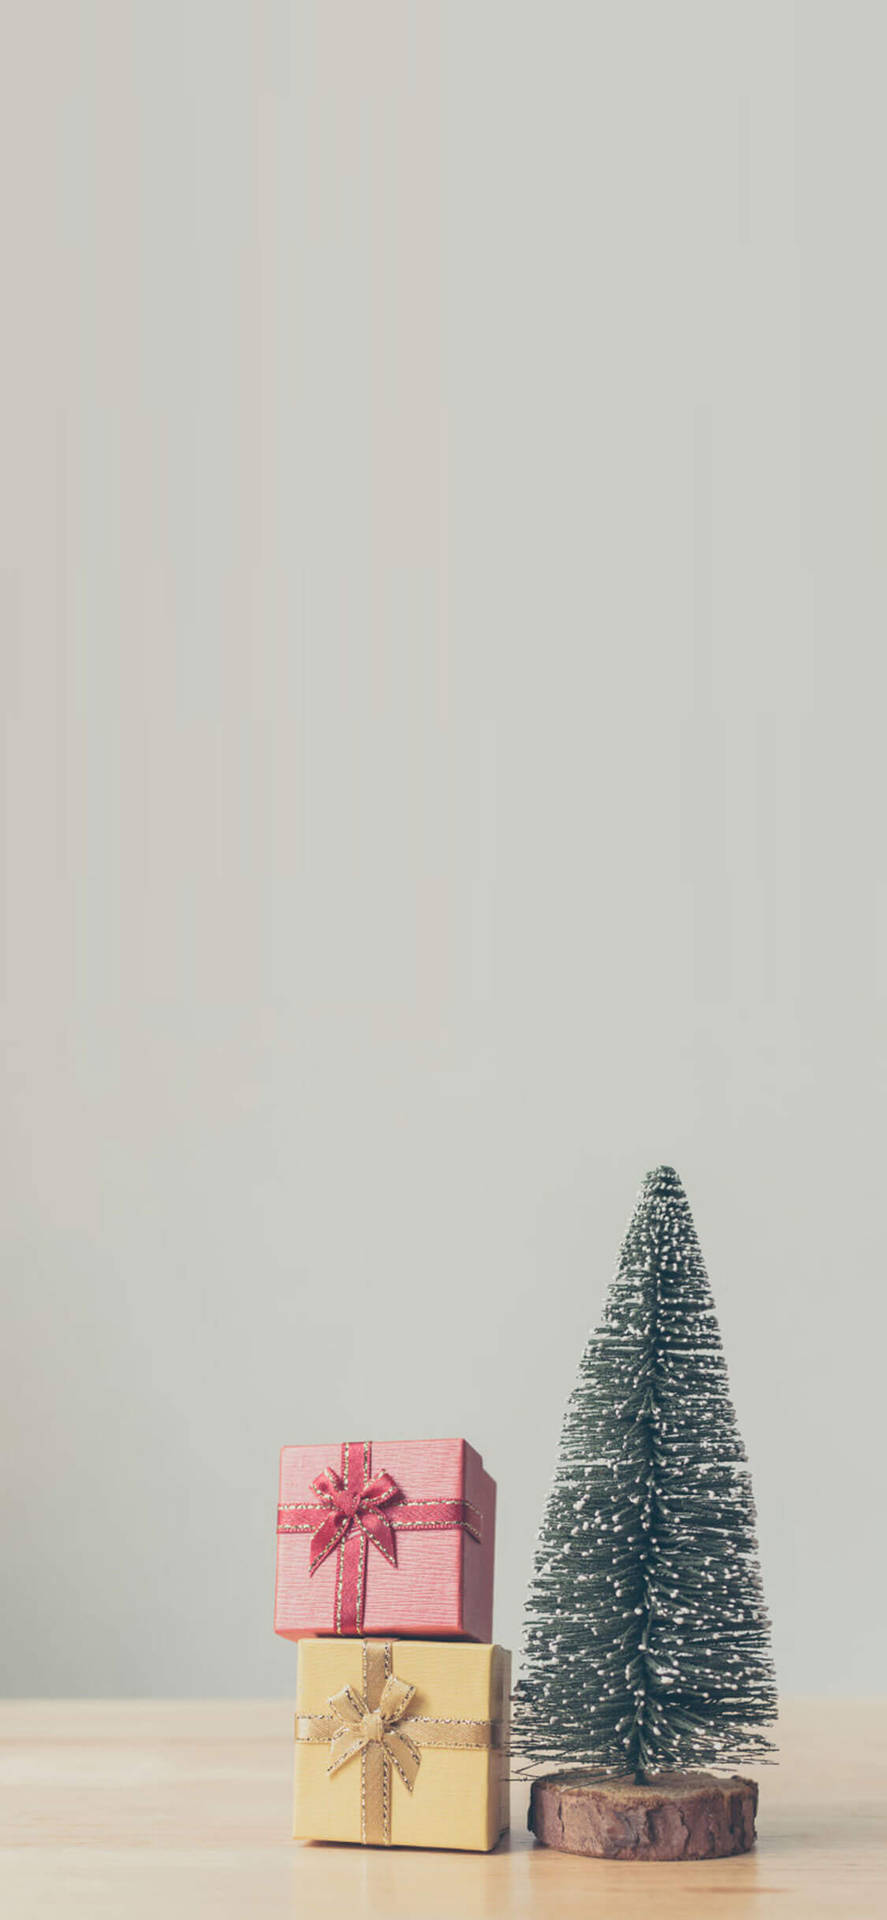 Weihnachtstannenbaum Und Geschenke Iphone Wallpaper